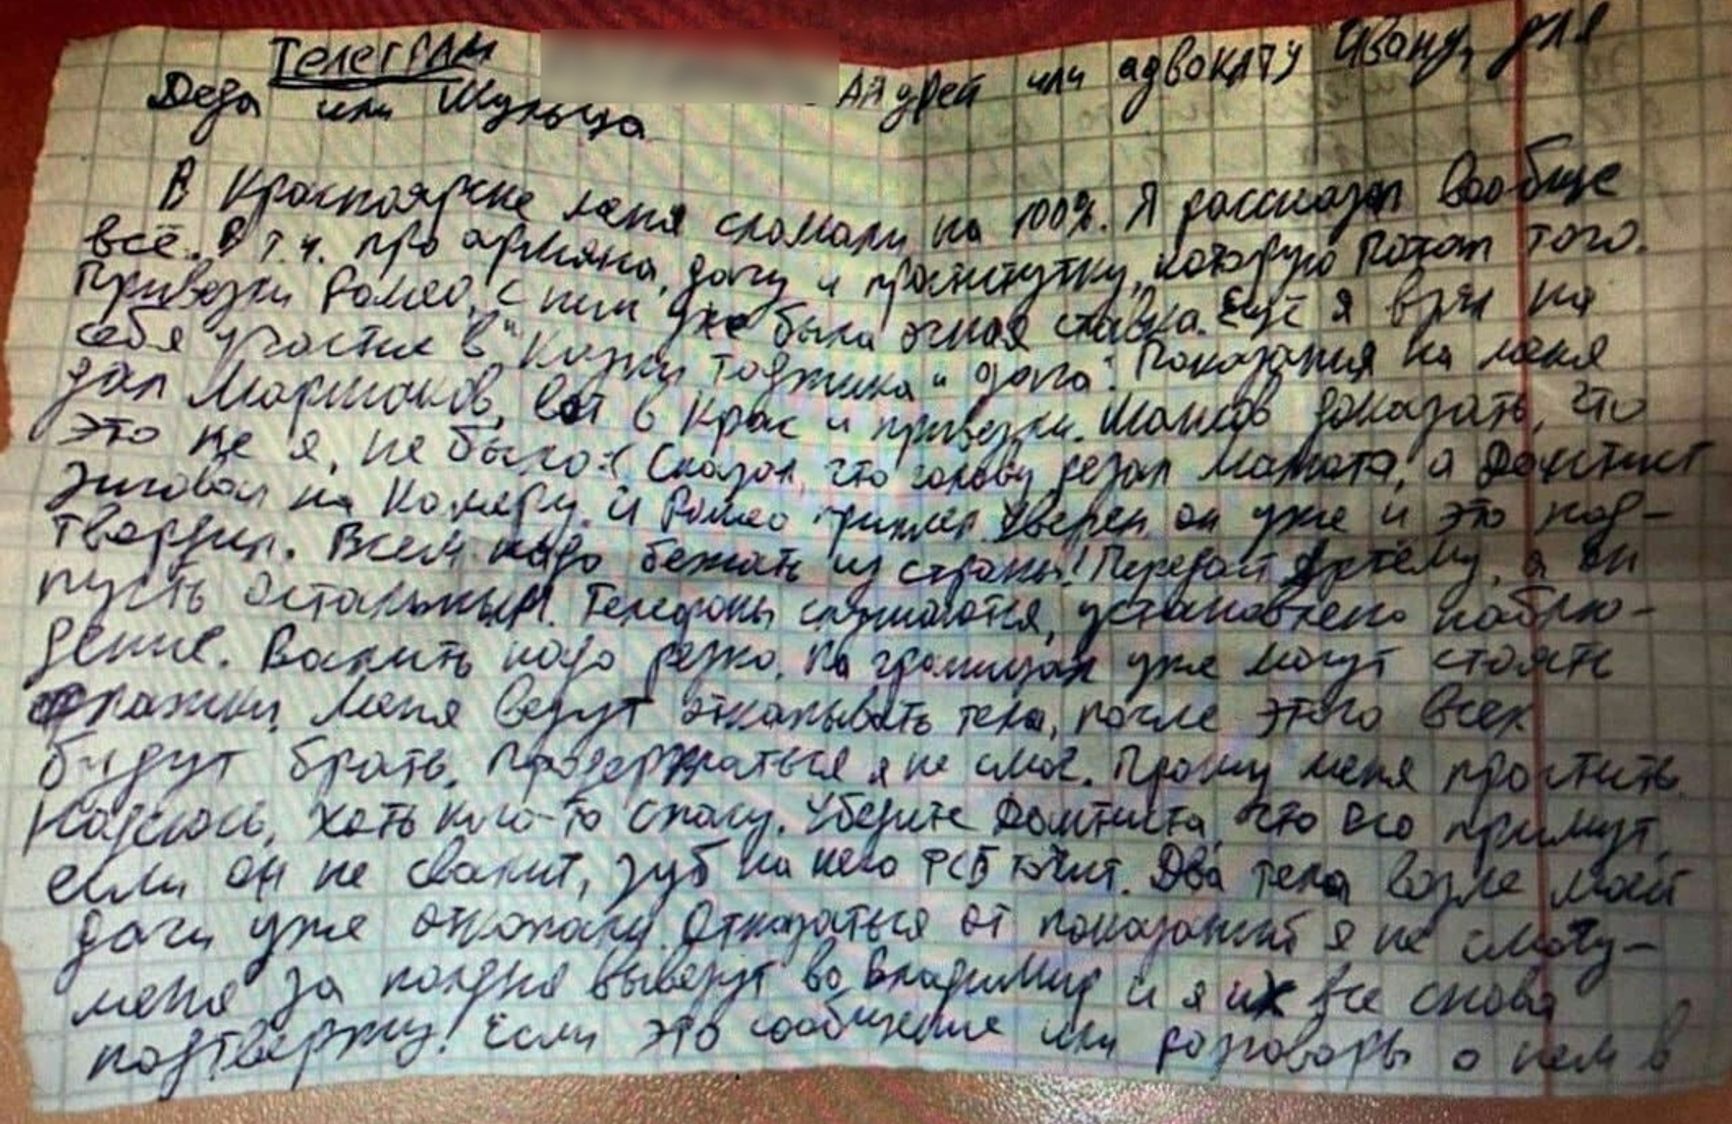 Опубліковано лист Тесака, в якому він зізнається в убивствах і закликає соратників бігти